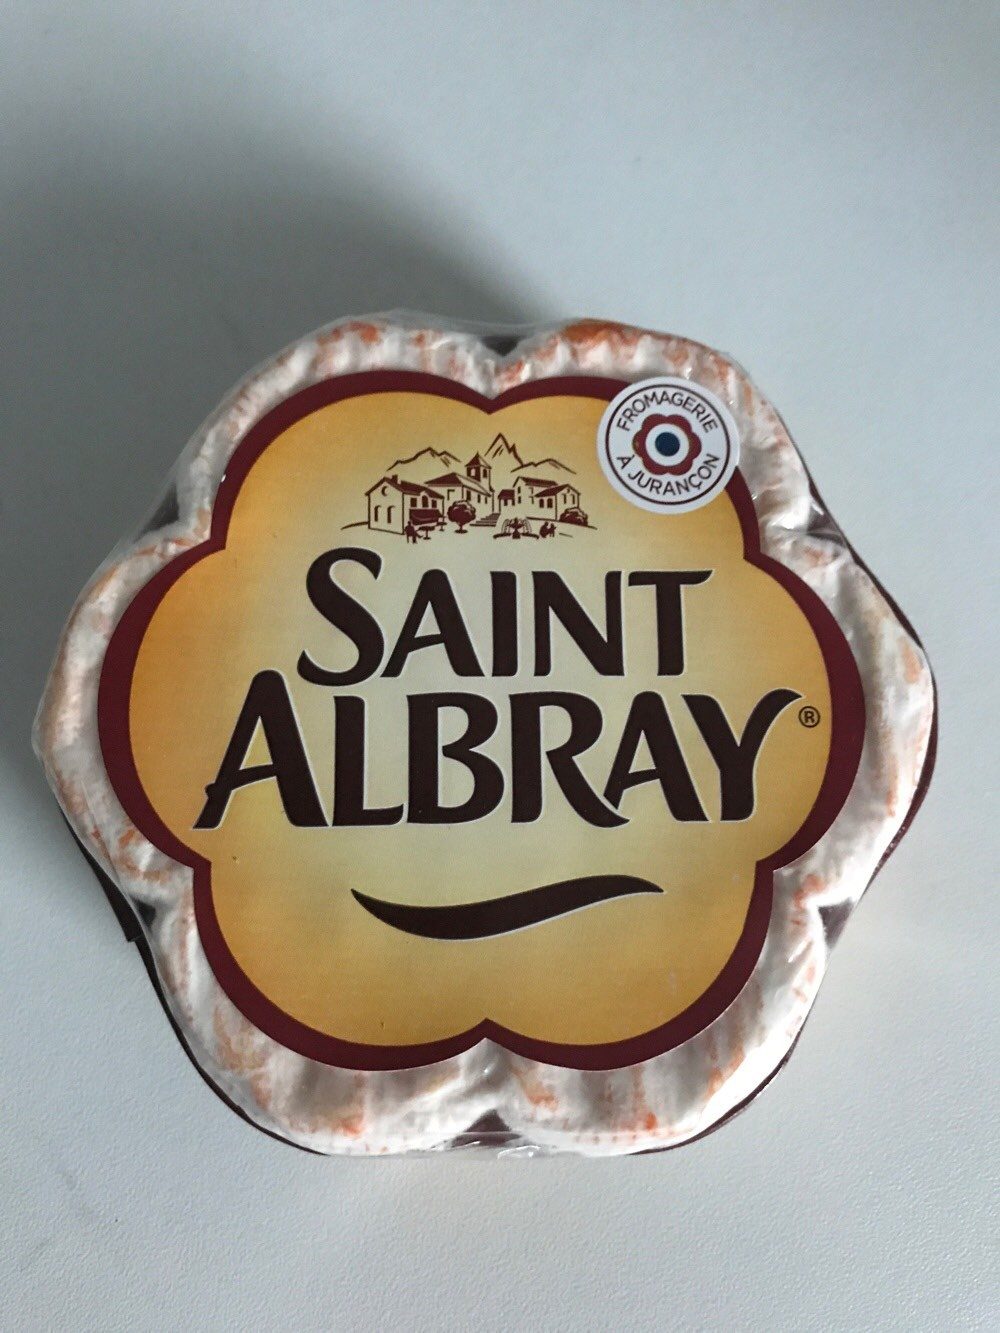 Saint Albray vollmundig & würzig - Produit